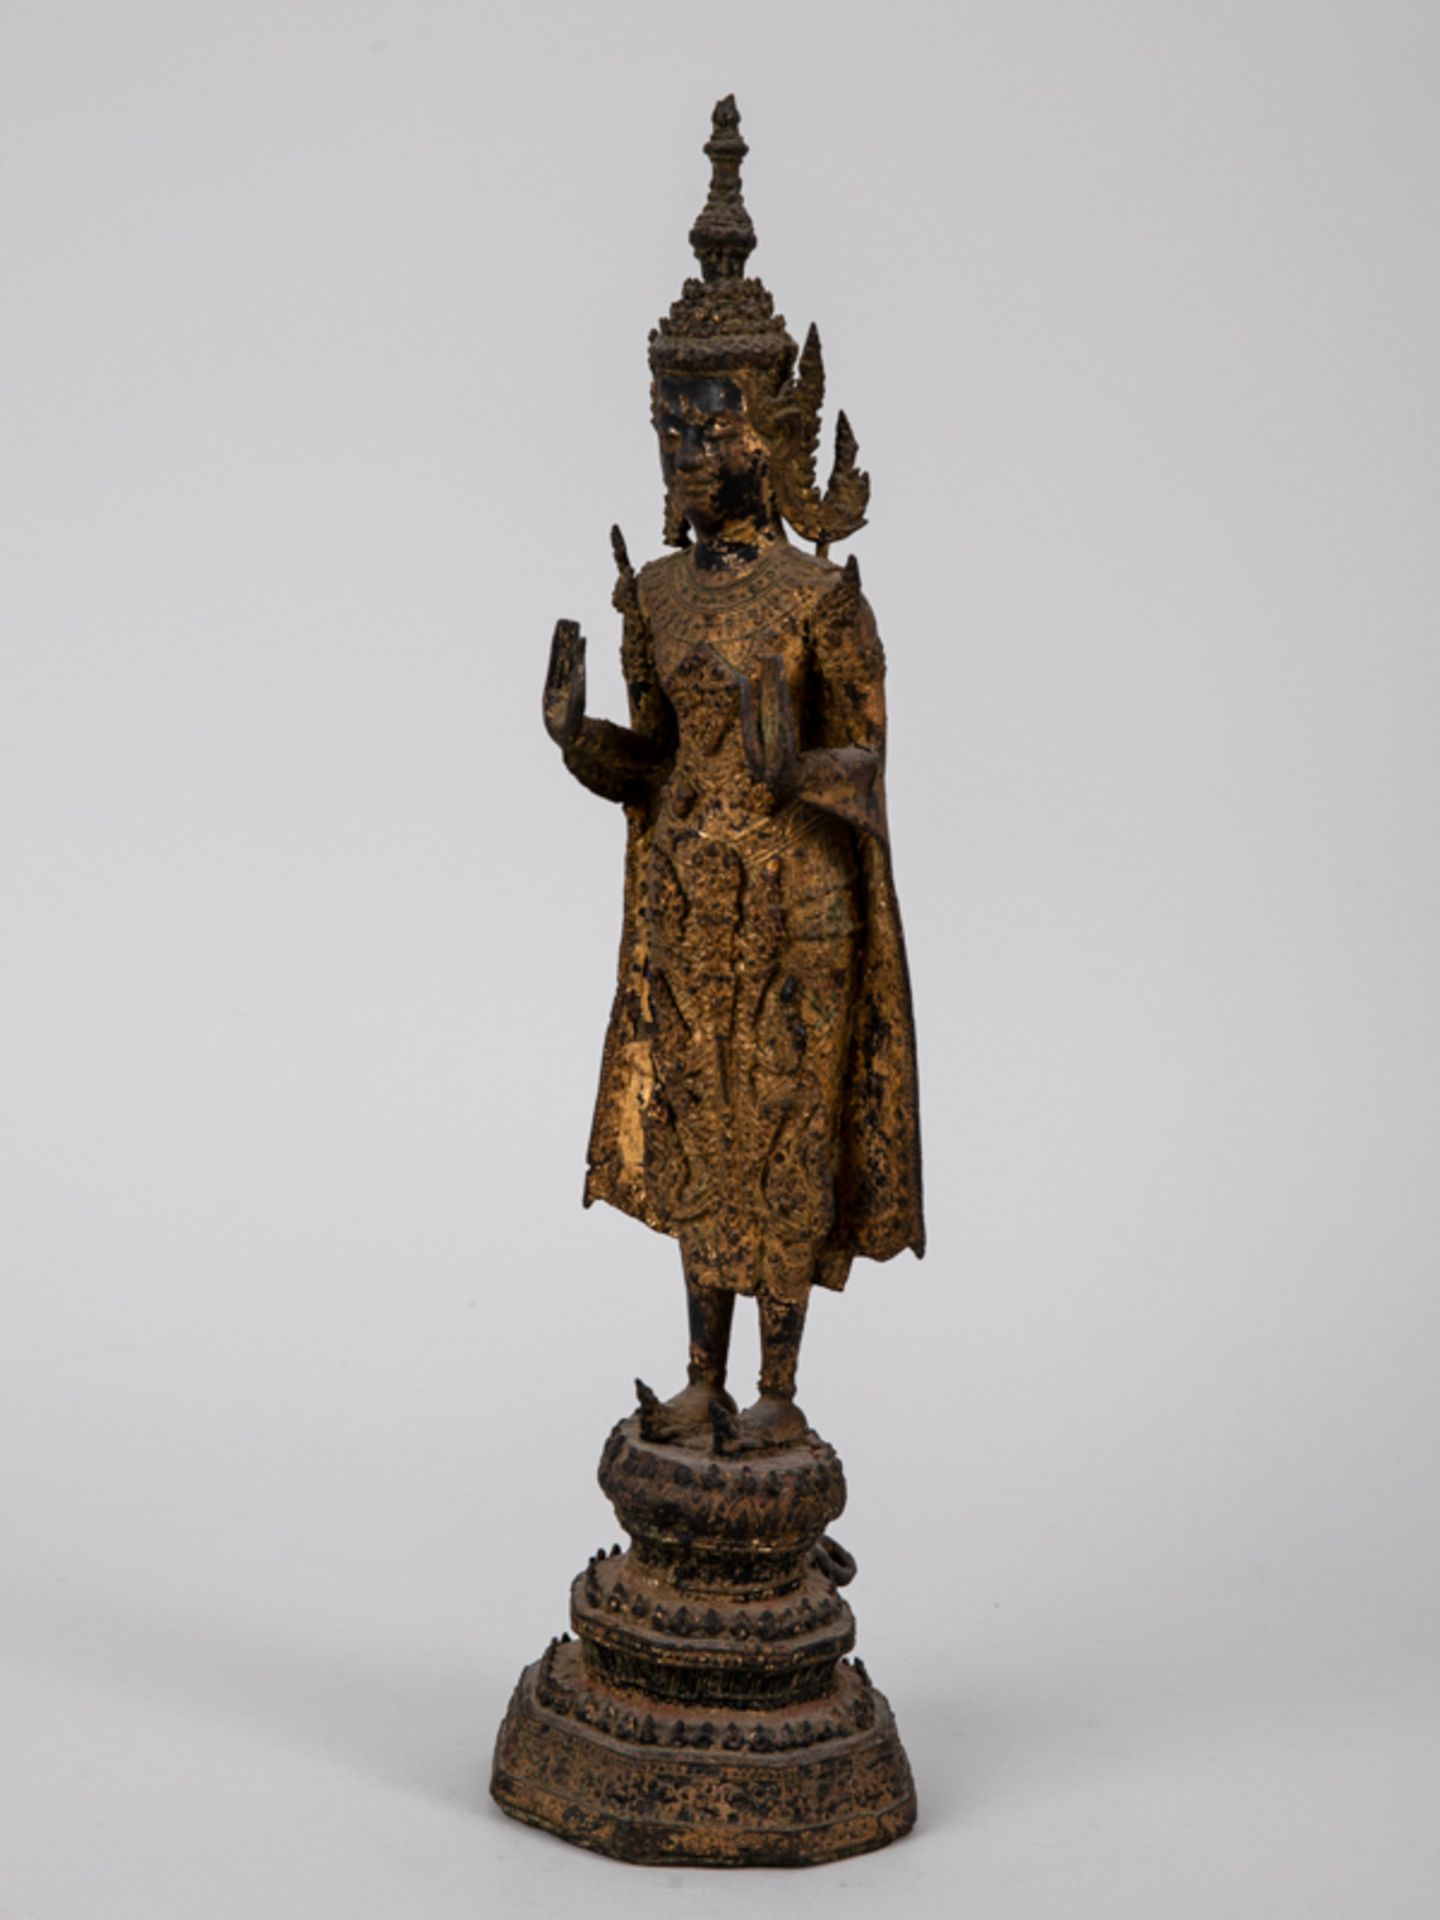 Buddhistische Tempelfigur, Thailand, 18./19. Jh. Bronze/Metallguss mit Resten alter Fassung und